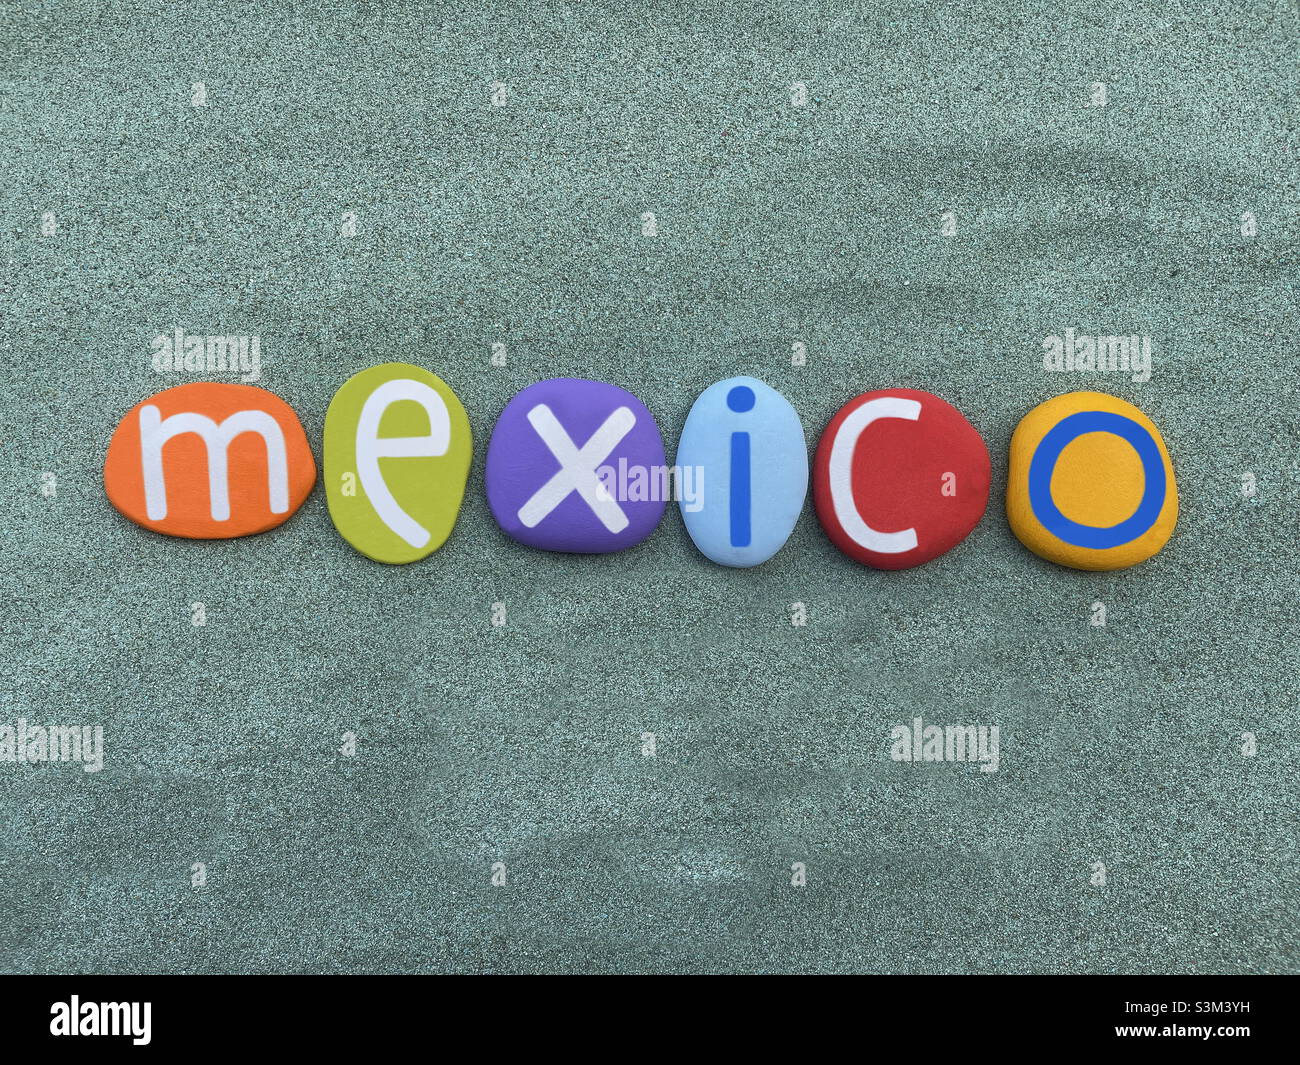 México, recuerdo compuesto por letras de piedra multicolor sobre arena verde Foto de stock